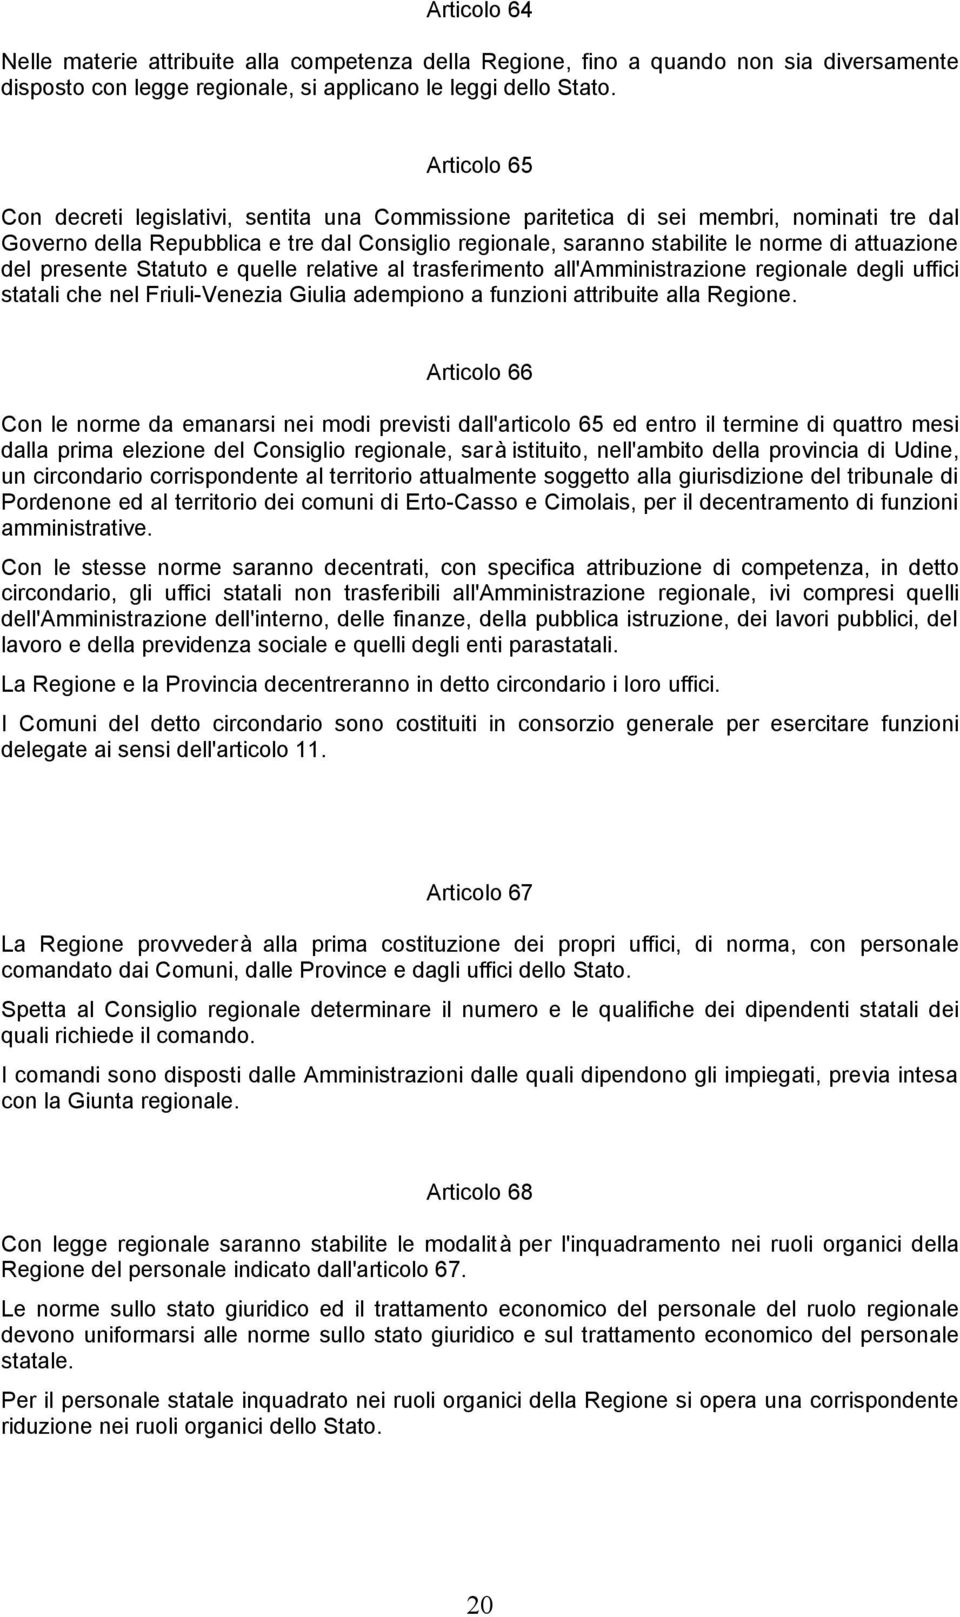 attuazione del presente Statuto e quelle relative al trasferimento all'amministrazione regionale degli uffici statali che nel Friuli-Venezia Giulia adempiono a funzioni attribuite alla Regione.